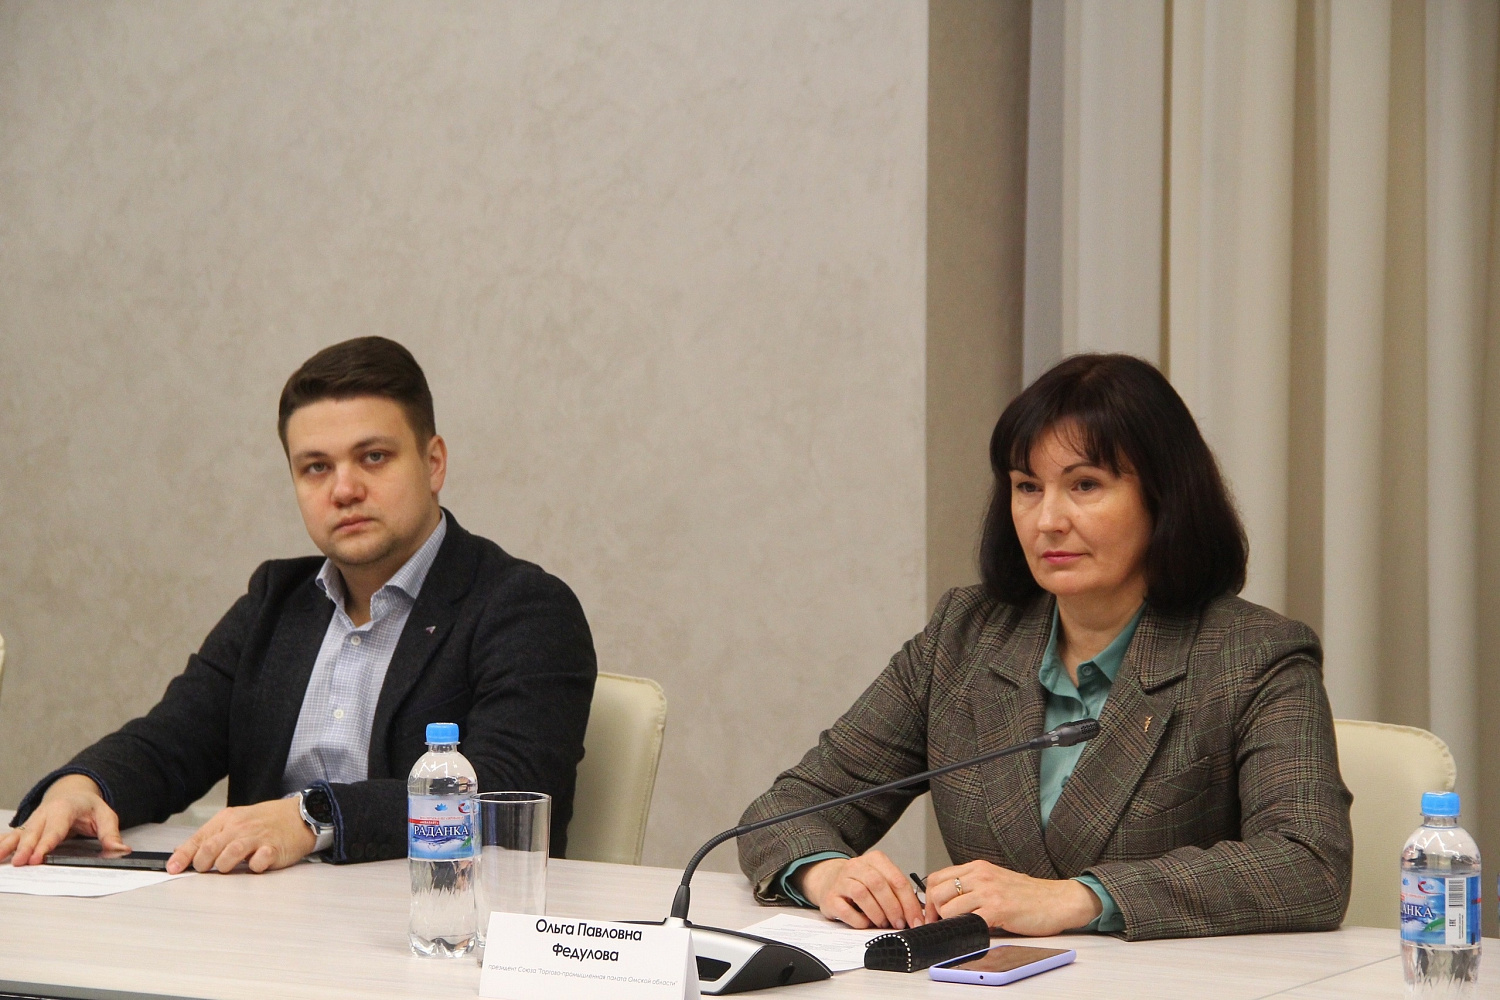 Прошло заседание Совета по улучшению инвестиционного климата в Омске под председательством мэра города Сергея Шелеста